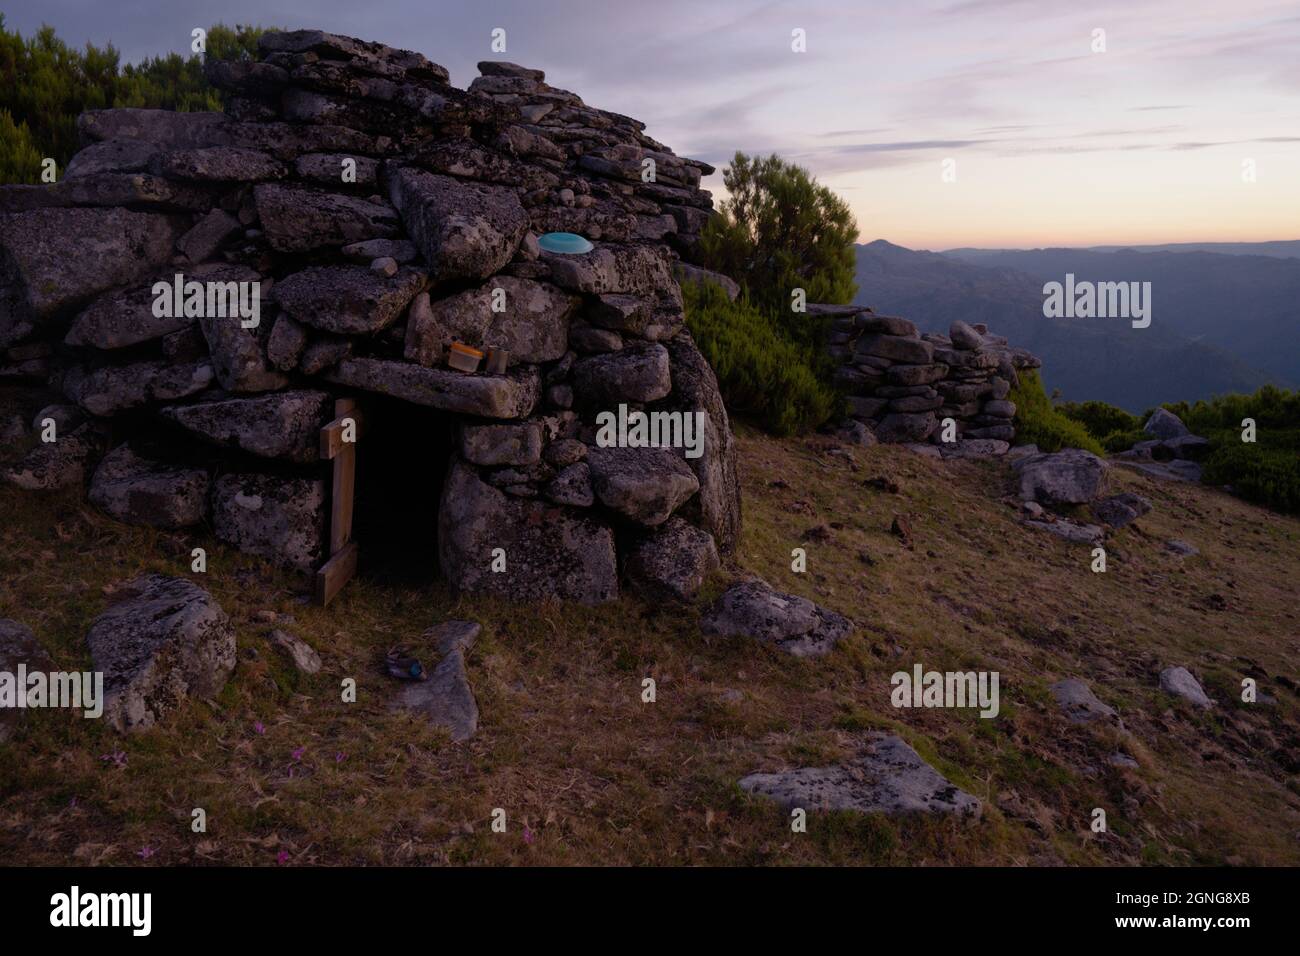 Cortelho, un piccolo rifugio rudimentar, costruito in pietra, utilizzato dai pastori quando si accerchiano le mucche negli altopiani dei monti Soajo. Foto Stock